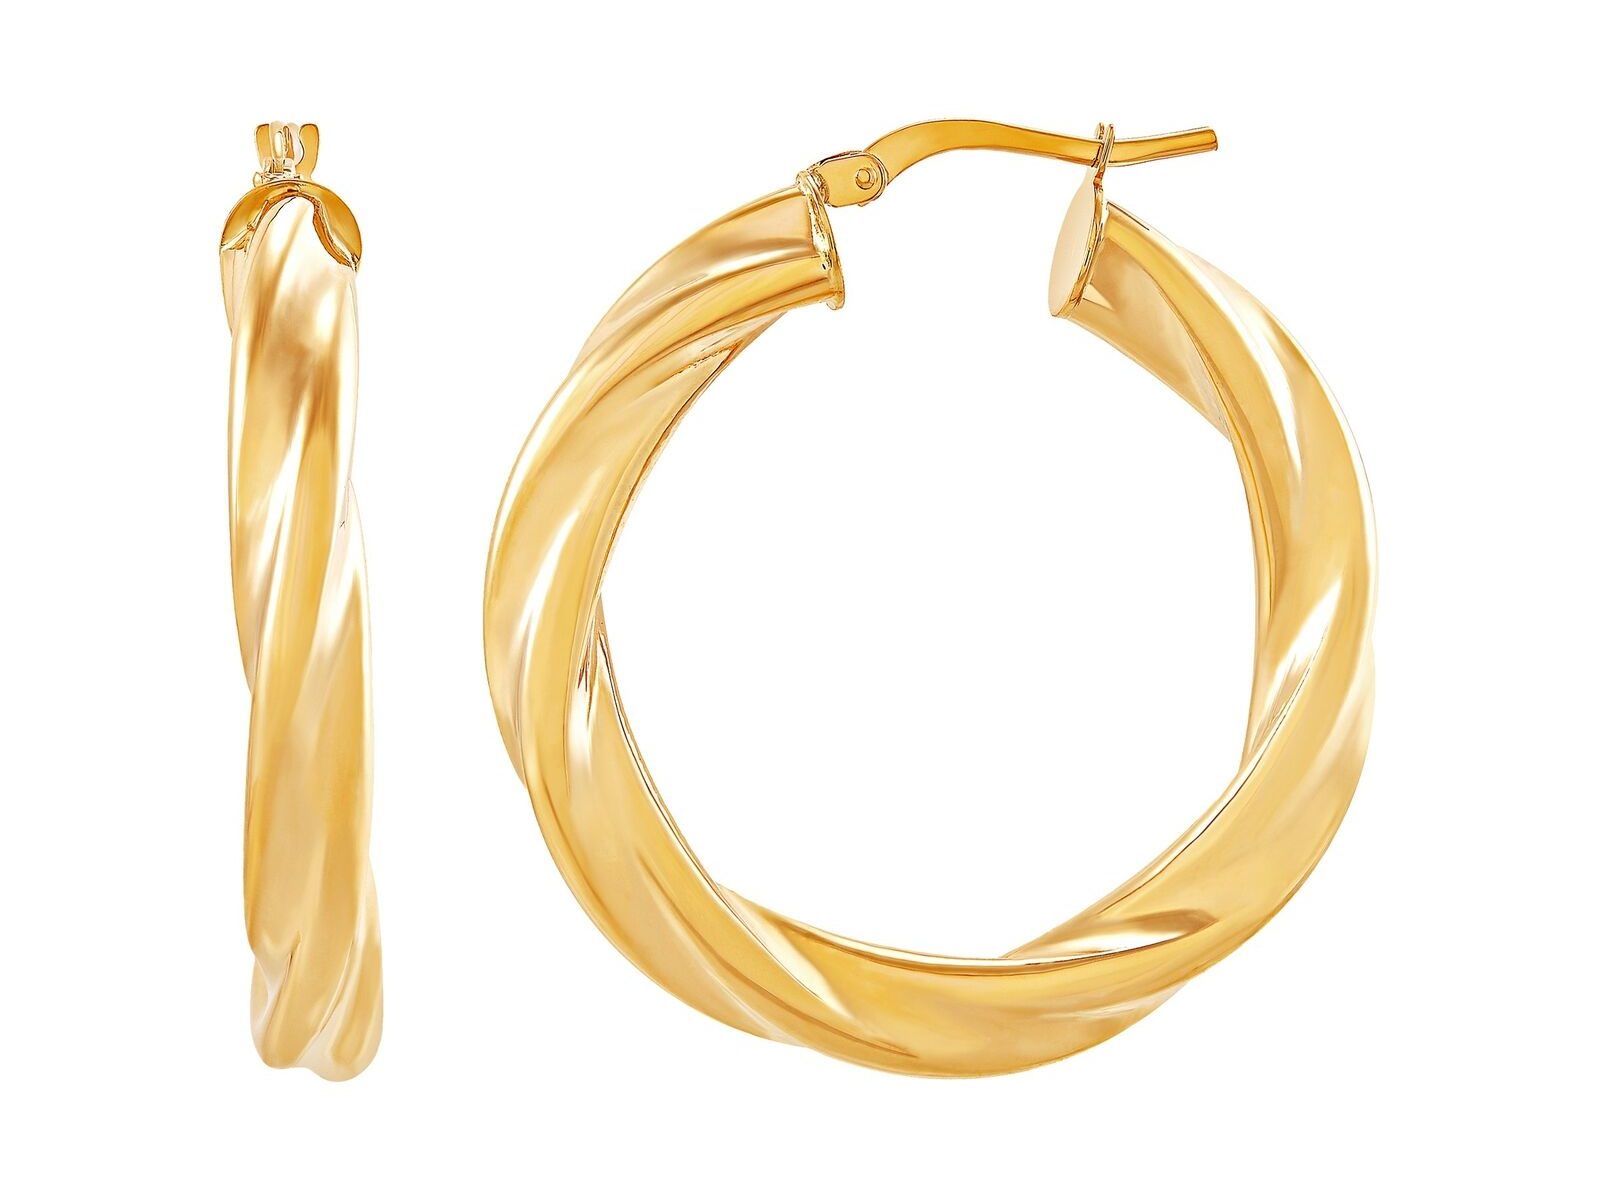 Italian-Made 25 mm Twisted Hoop Earrings in 14K Gold